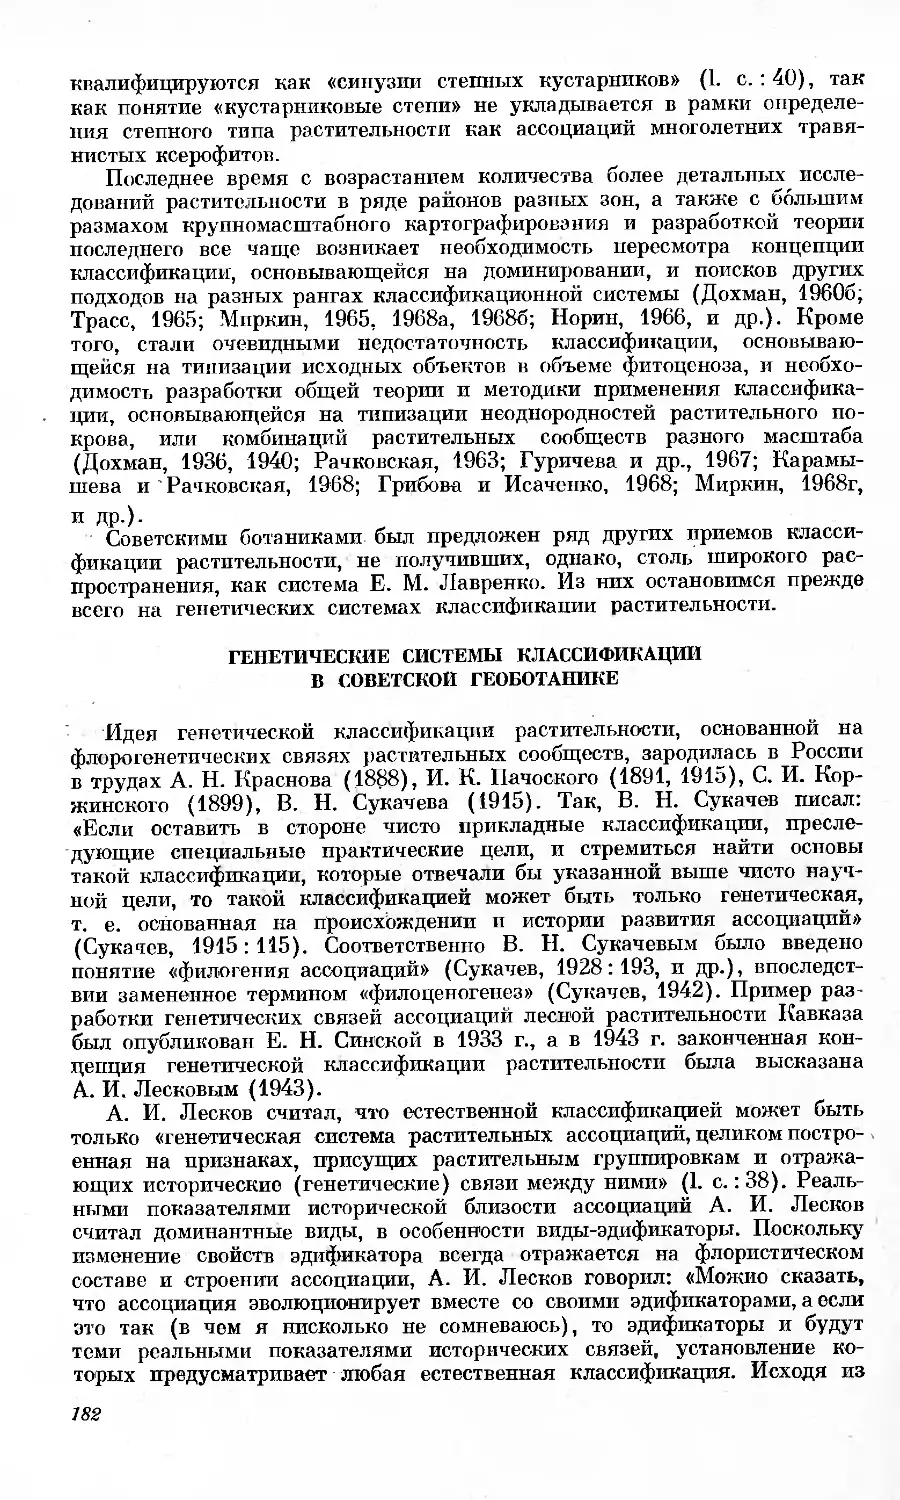 Генетические системы классификации в советской геоботанике